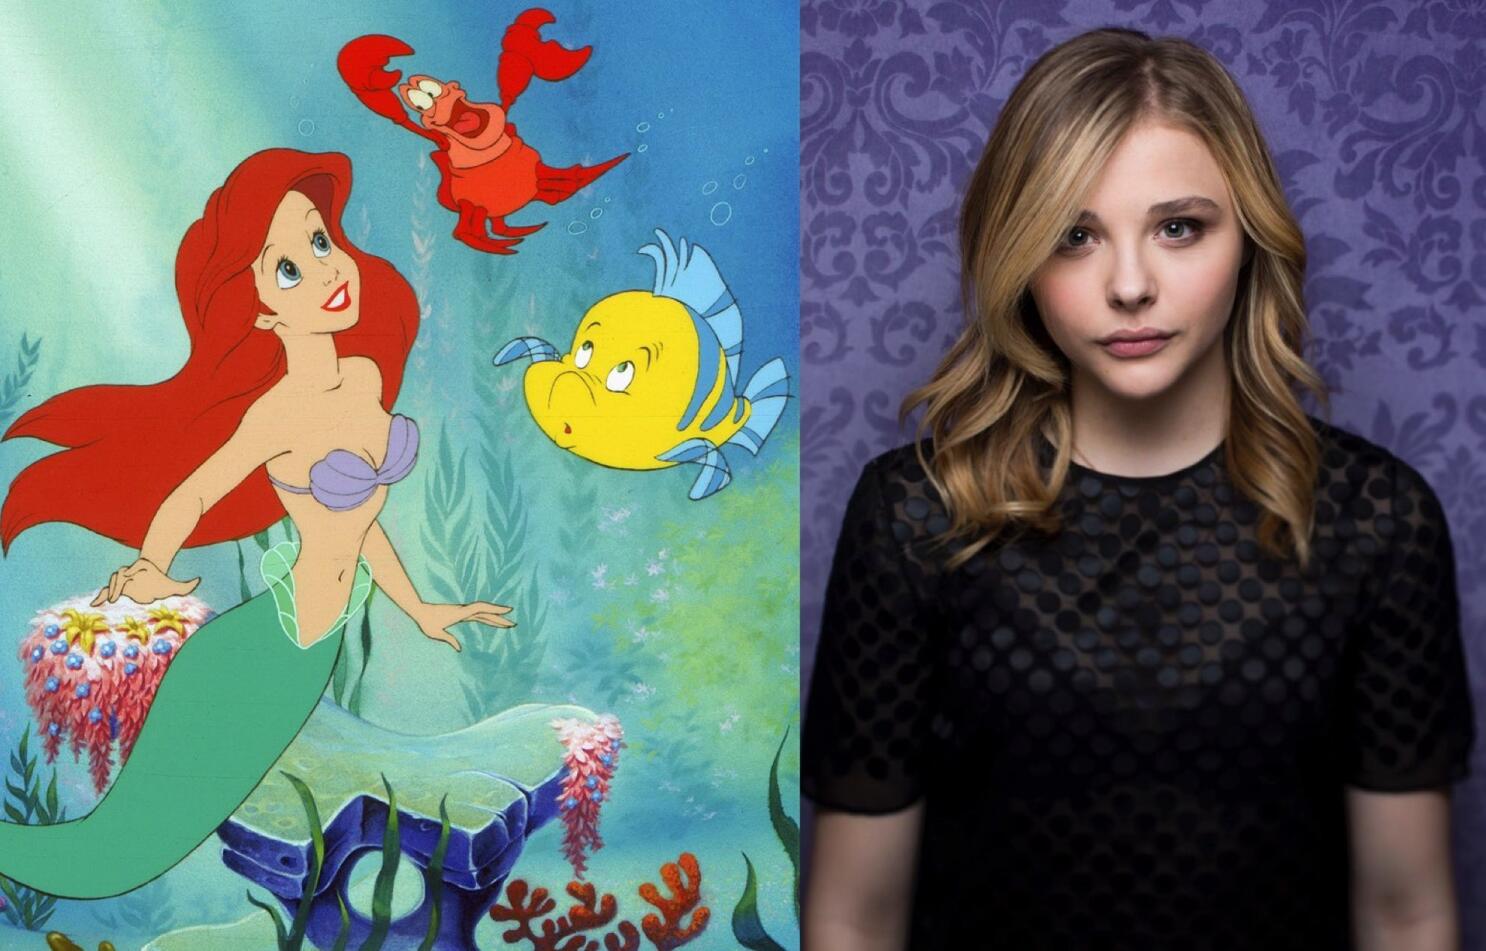 Chloe Grace Moretz Confirms Little Mermaid Role